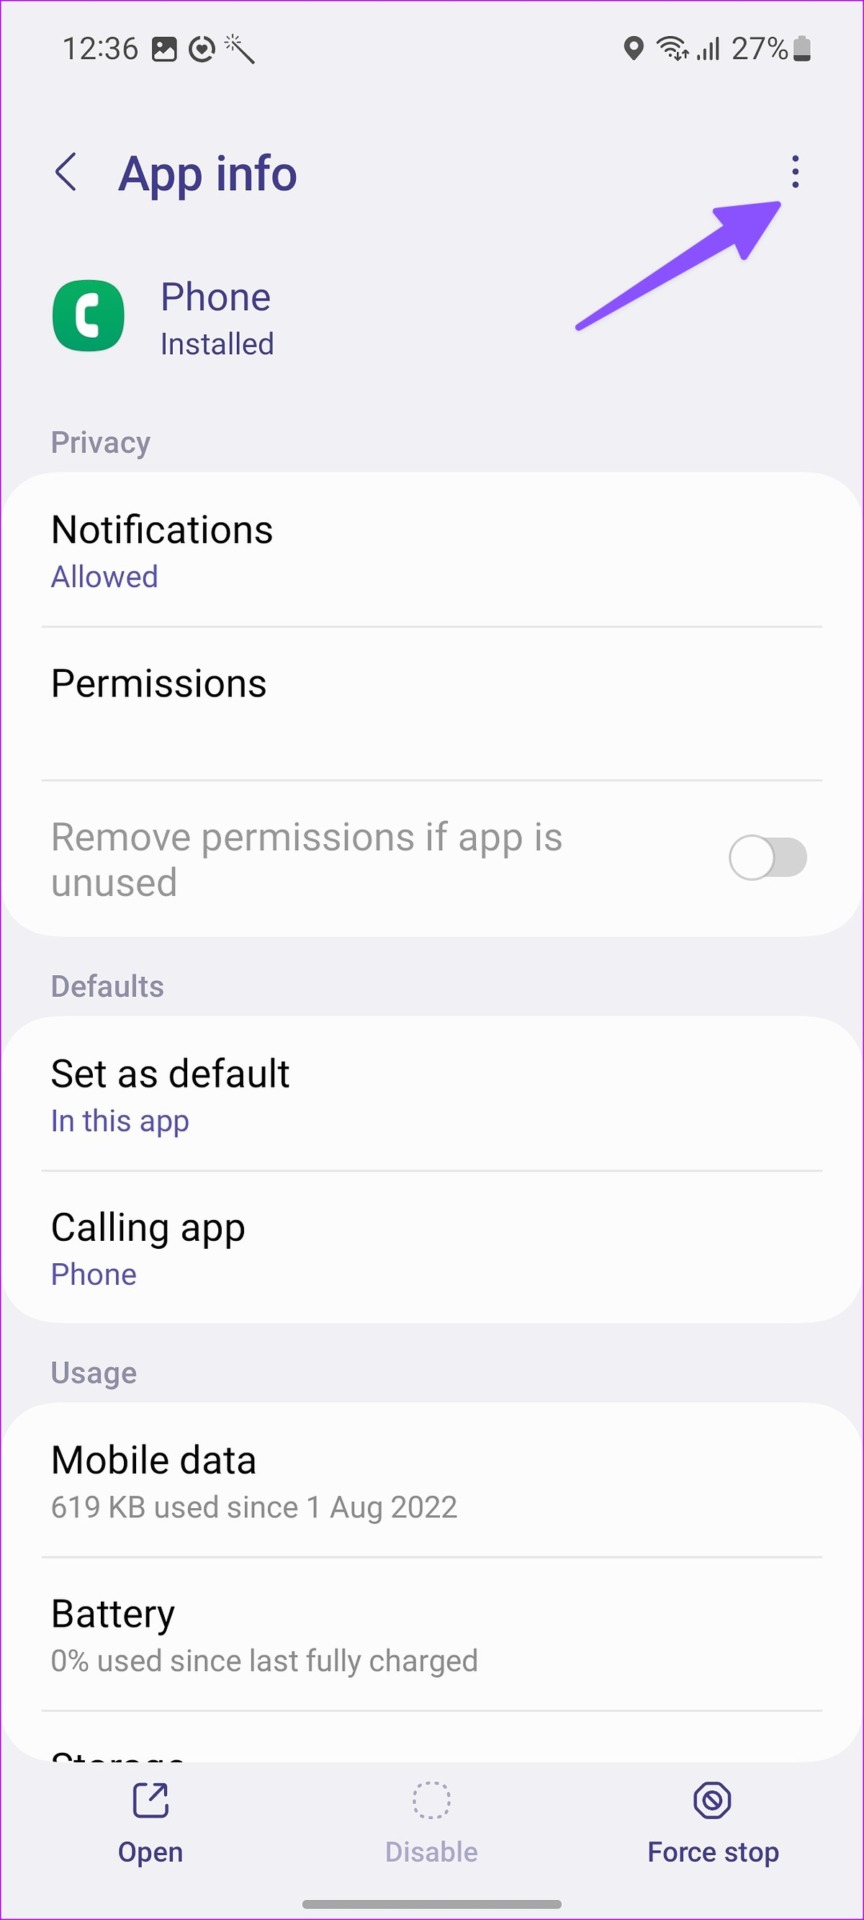 Open more menu in Phone app